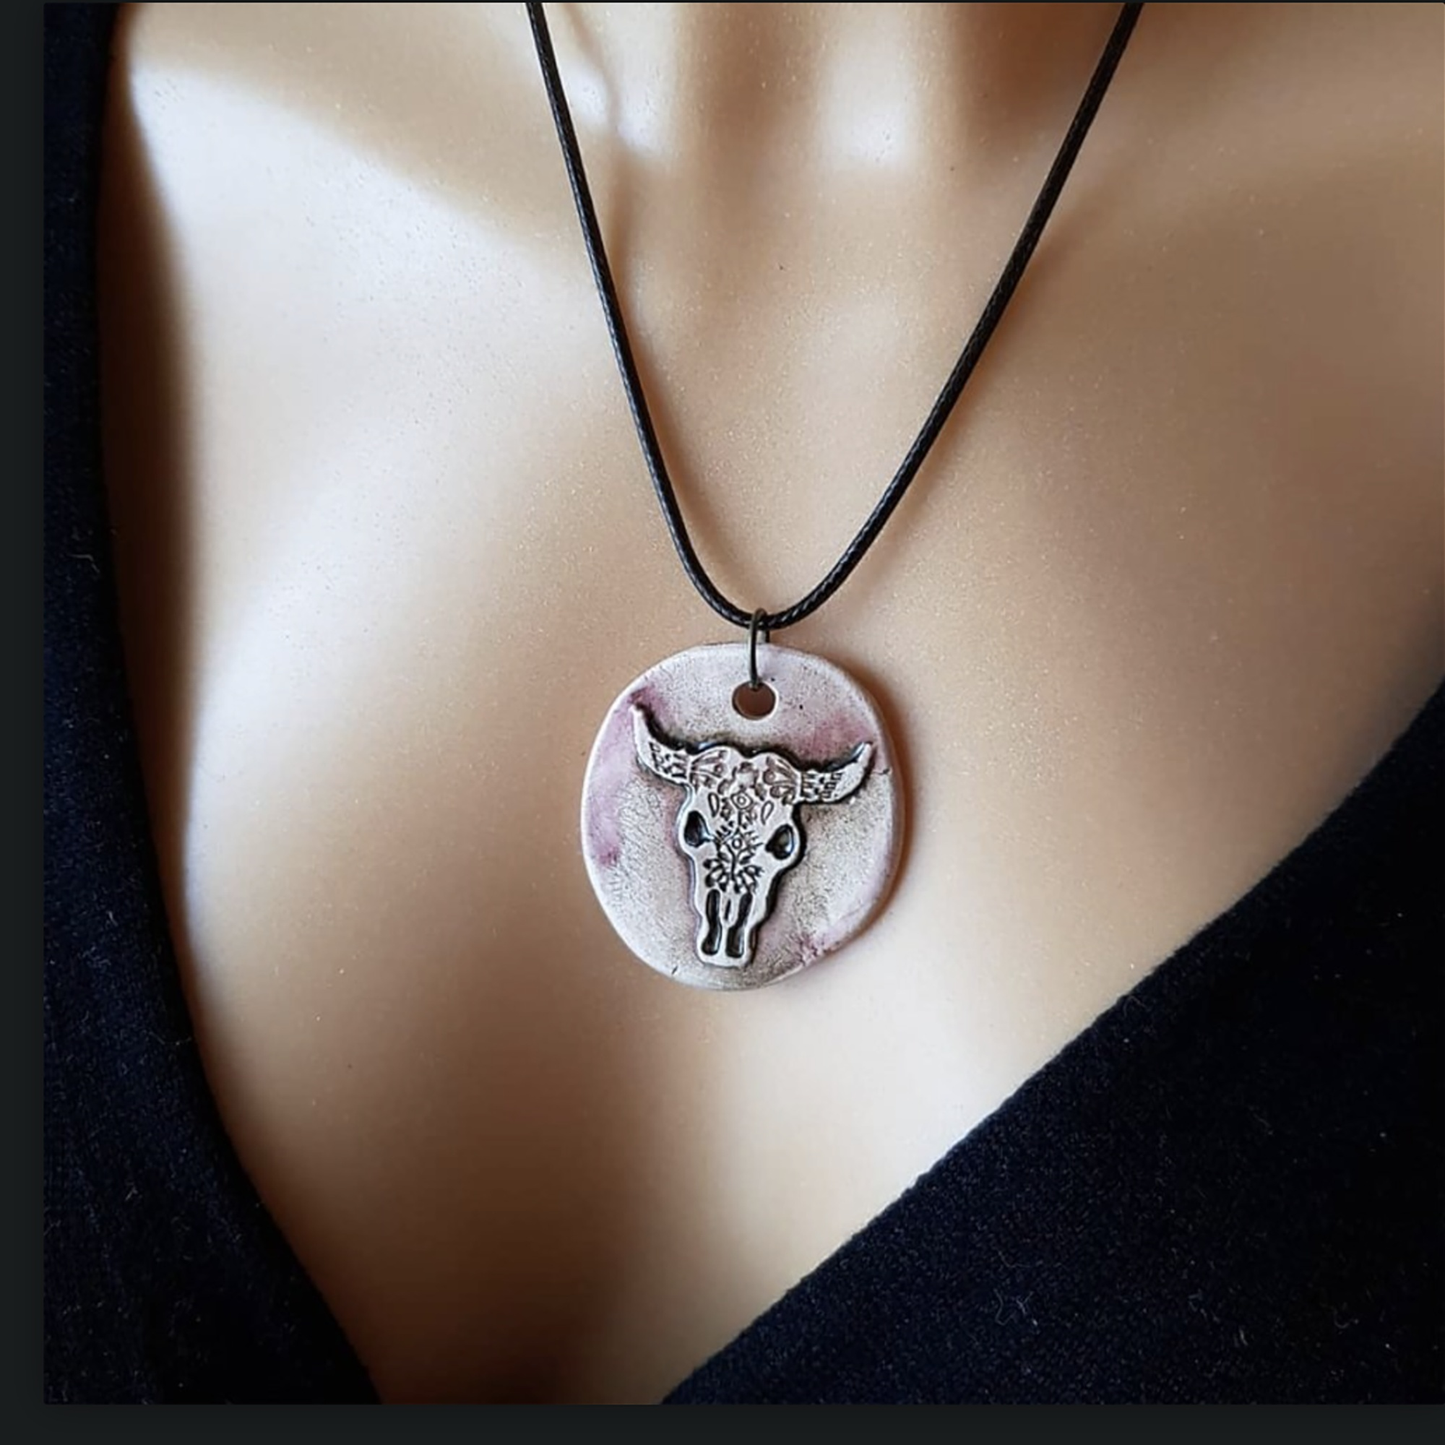 Cow Skull Halskæde Håndlavet keramisk medaljon - Pink, Lilla eller Mint